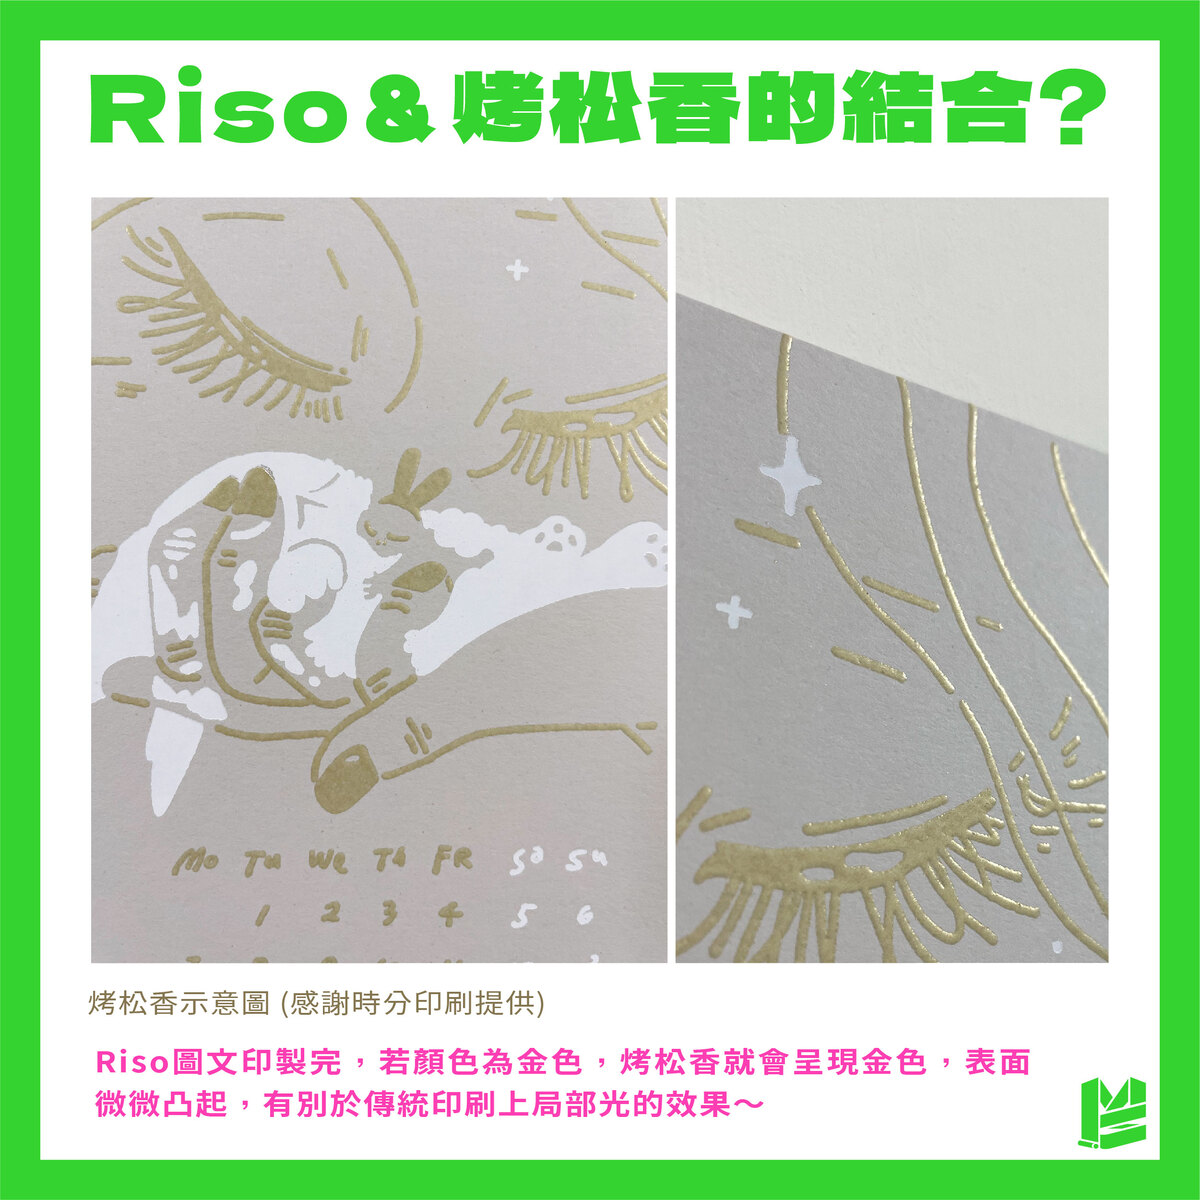 「Riso能做什麼後加工？烤松香✕Riso的4個小撇步報你知」－Riso＆烤松香的結合？